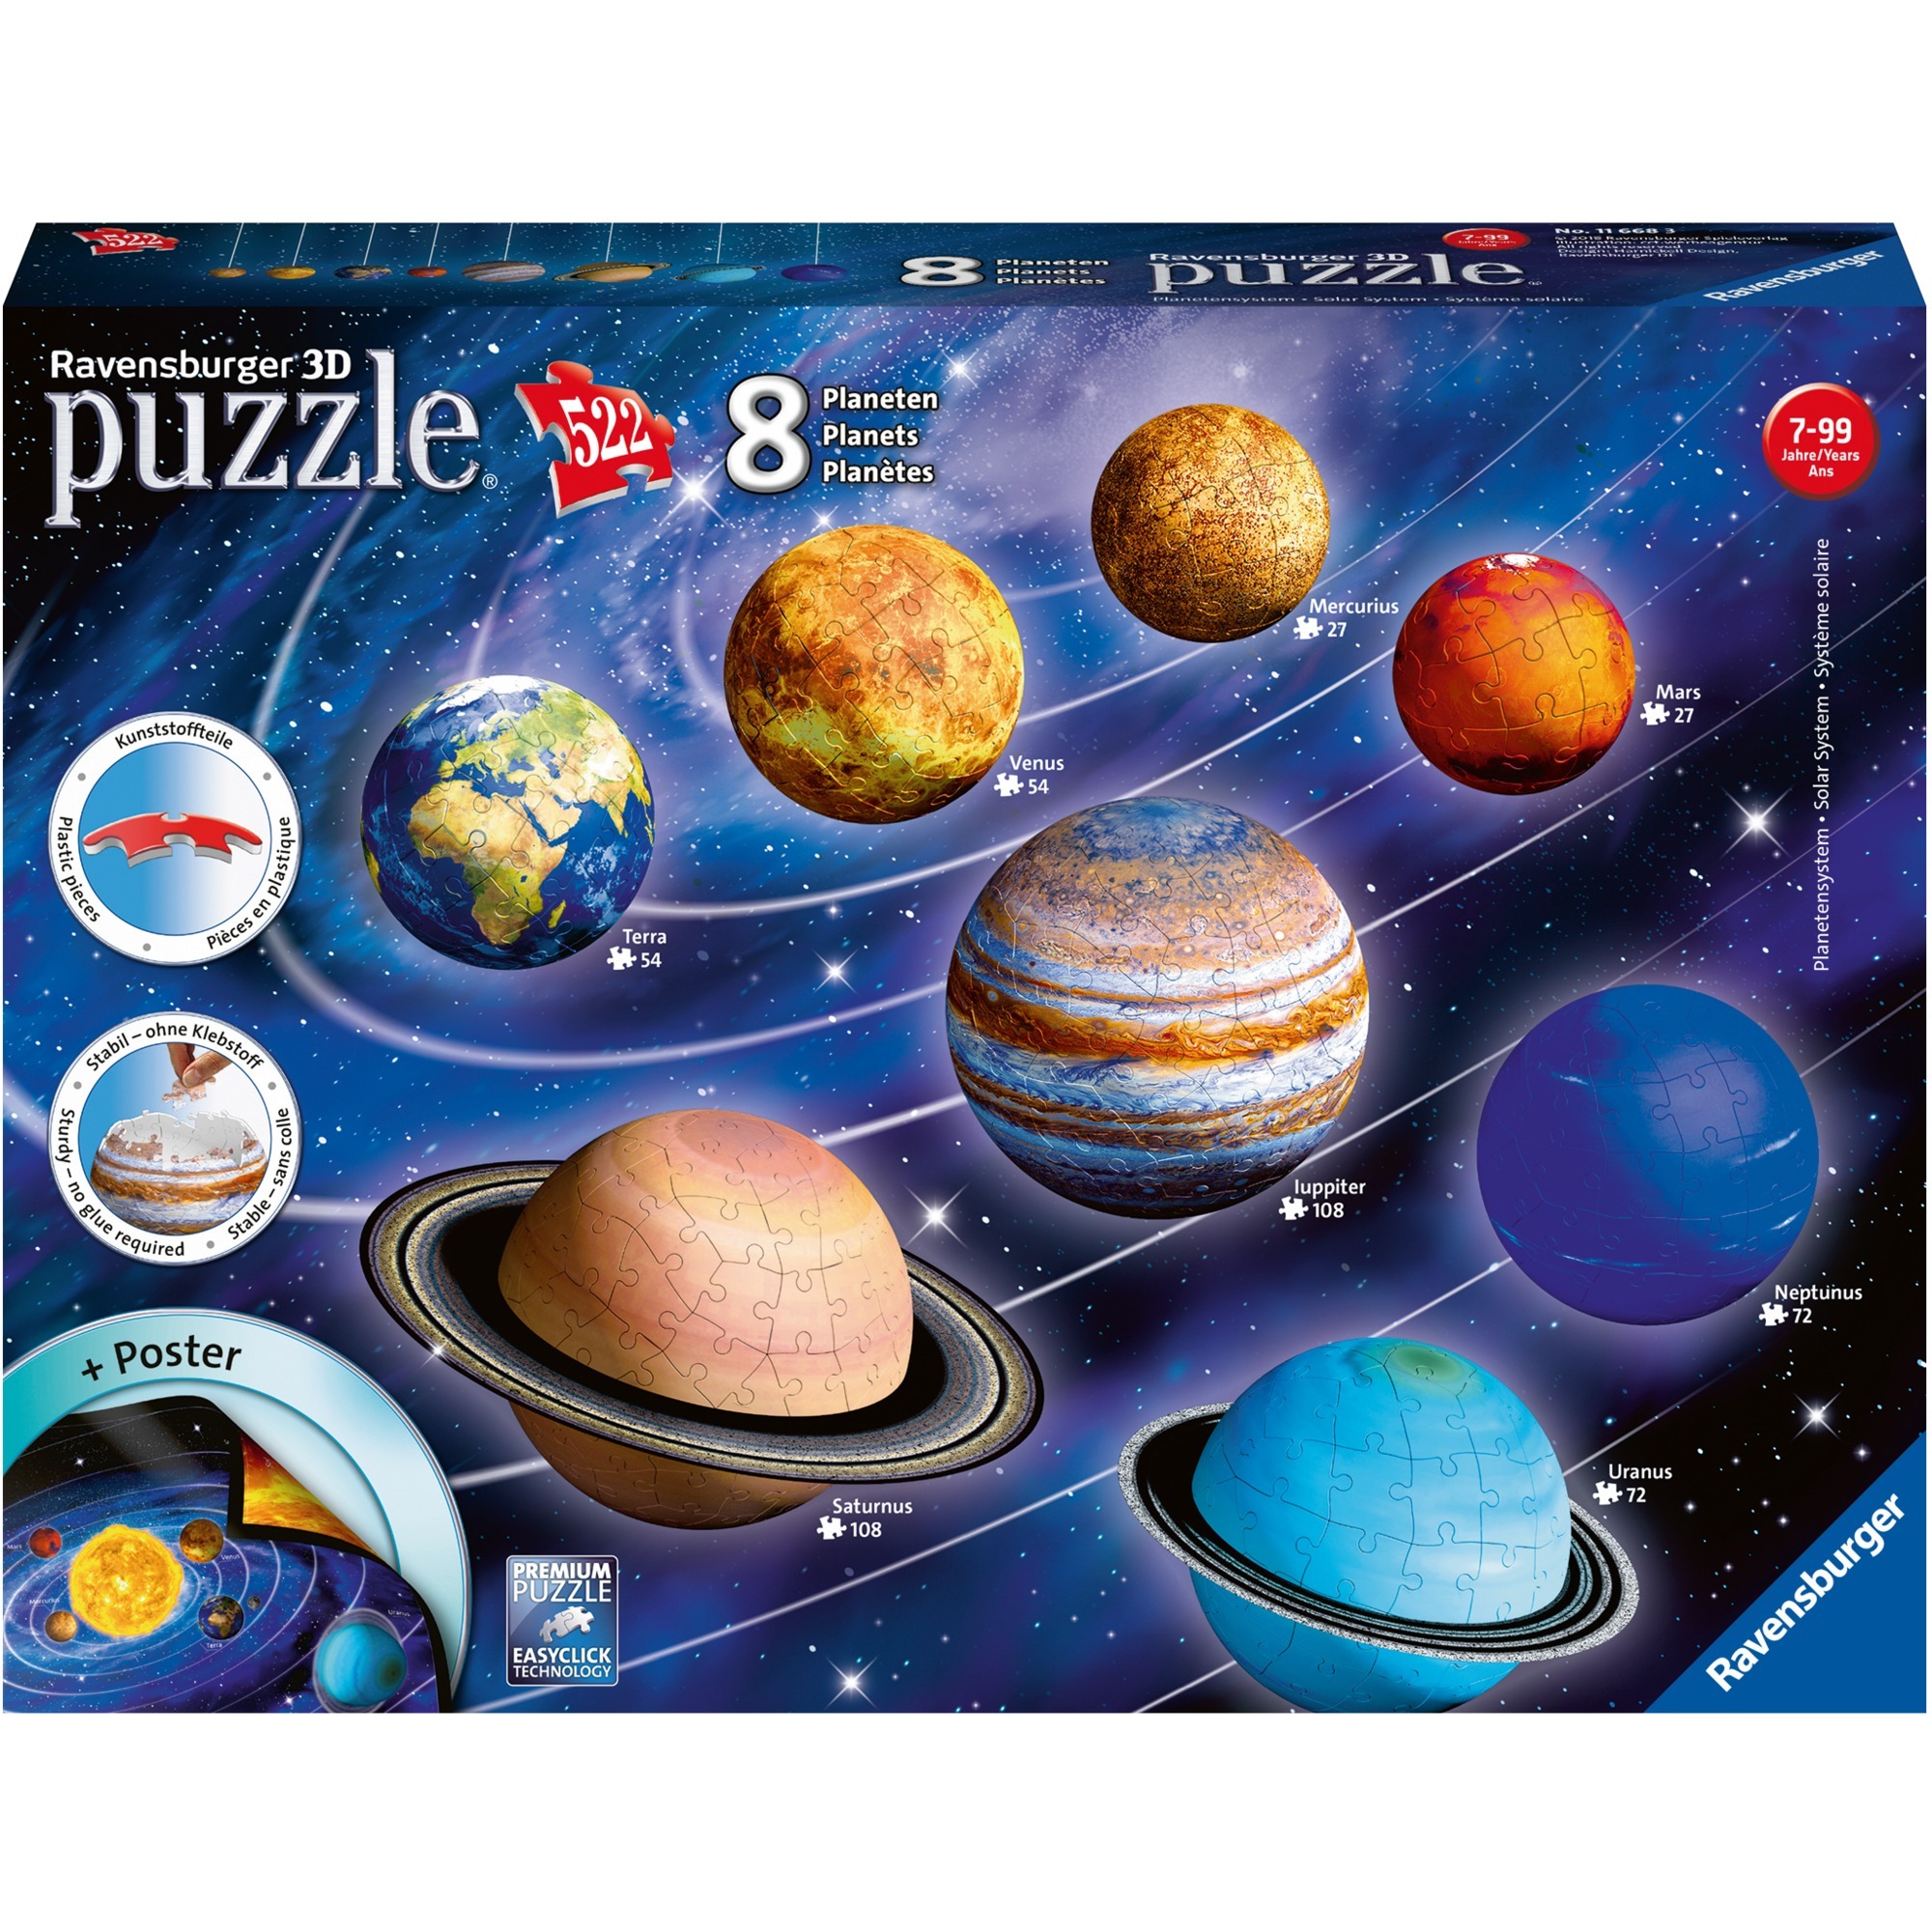 Image of Alternate - 3D-Puzzle Planetensystem online einkaufen bei Alternate